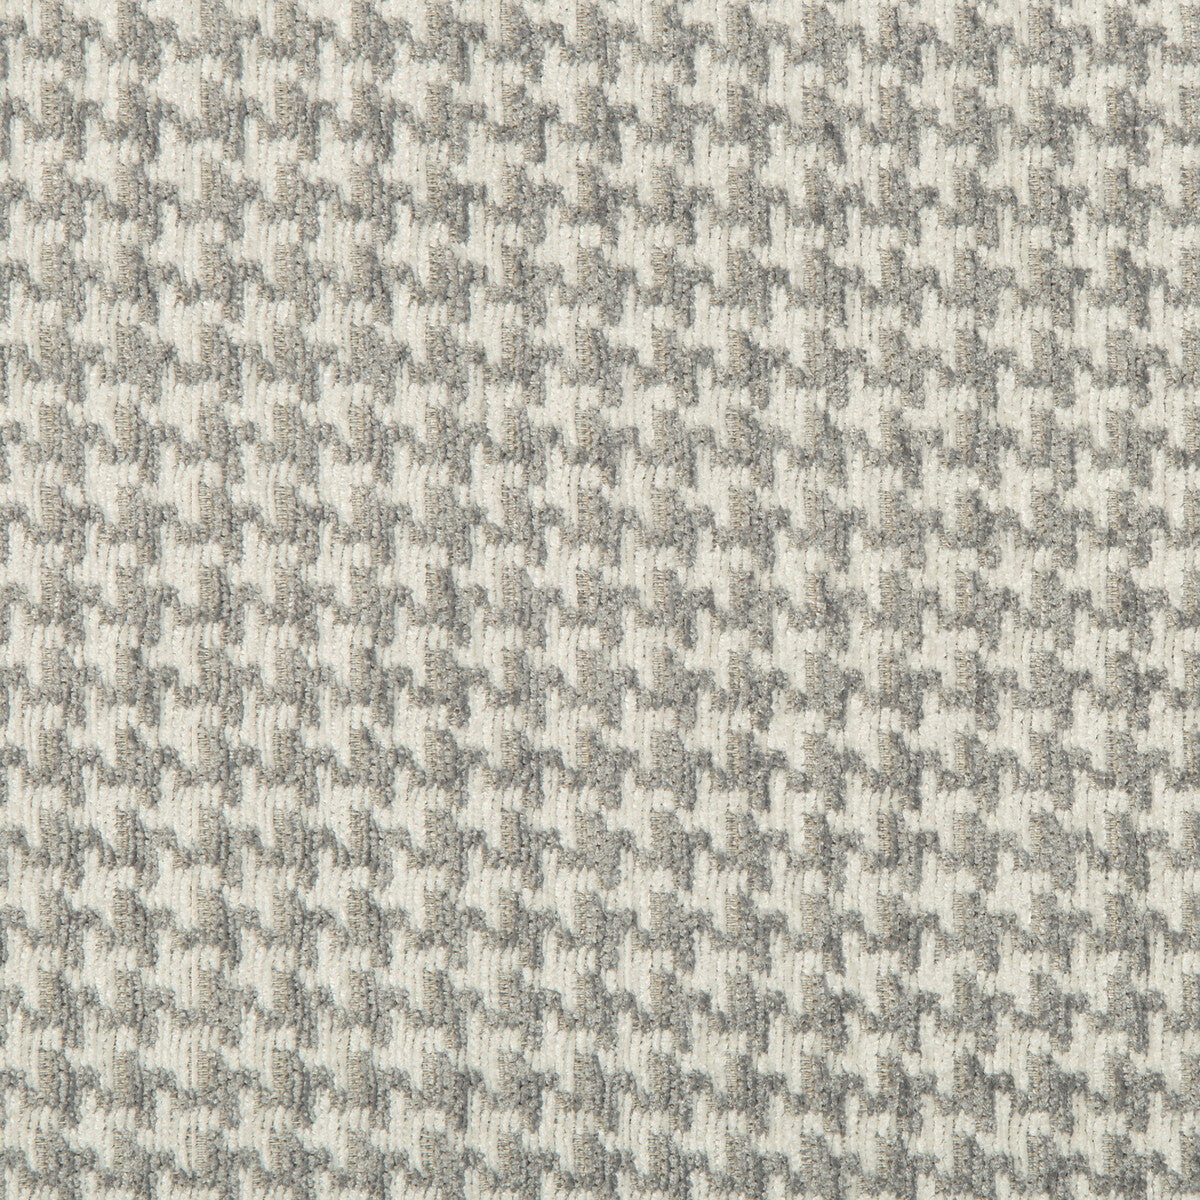 Kravet Design fabric in 35693-11 color - pattern 35693.11.0 - by Kravet Design